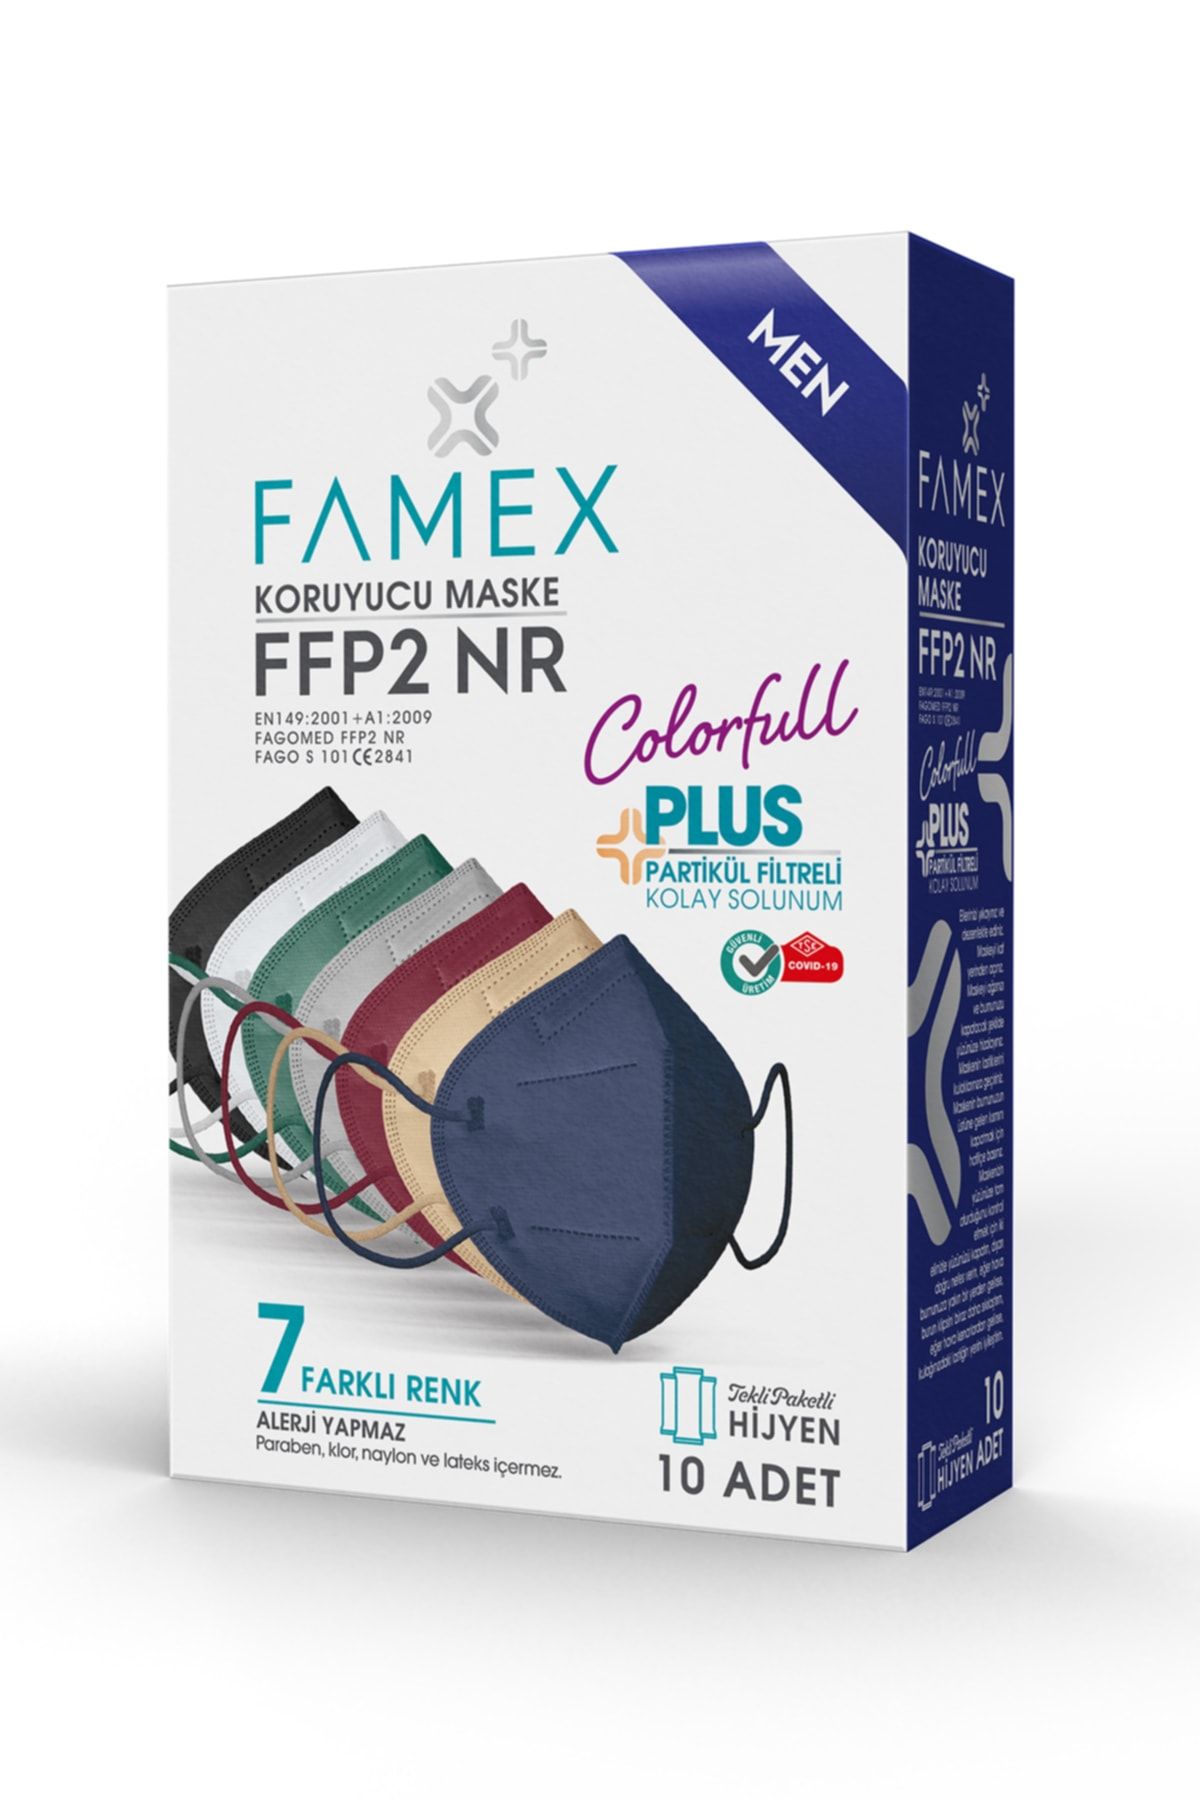 FAMEX N95 Ffp2 Koruyucu Maske Erkek Karışık Renkli 10 Adet Tekli Paket Duck Modeli